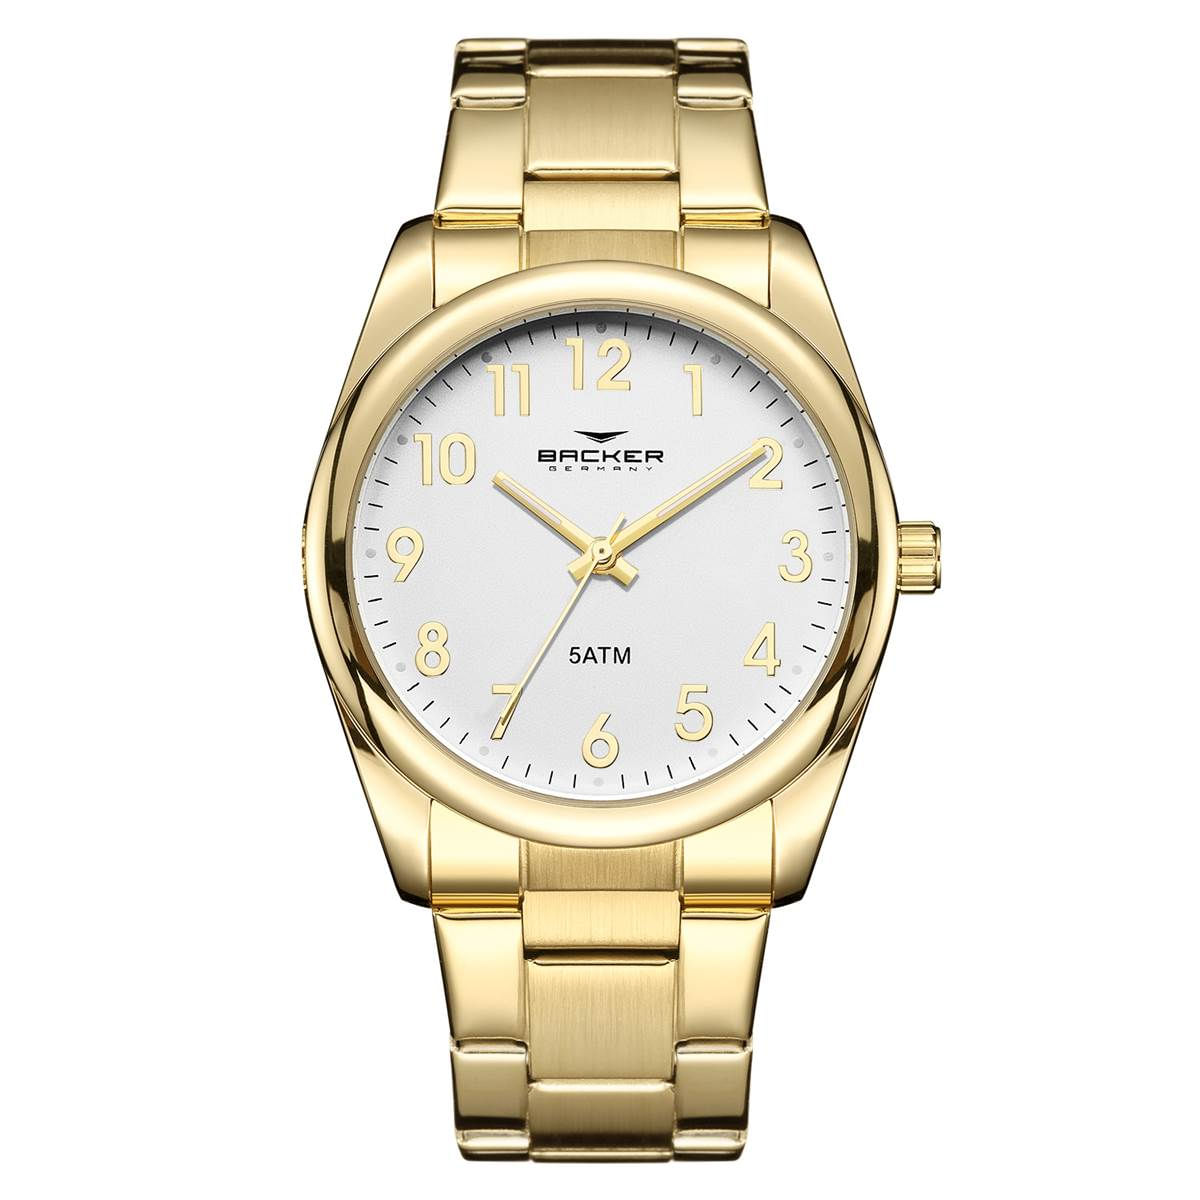 Relógio Backer Feminino Ref: 10447145m Br Clássico Dourado